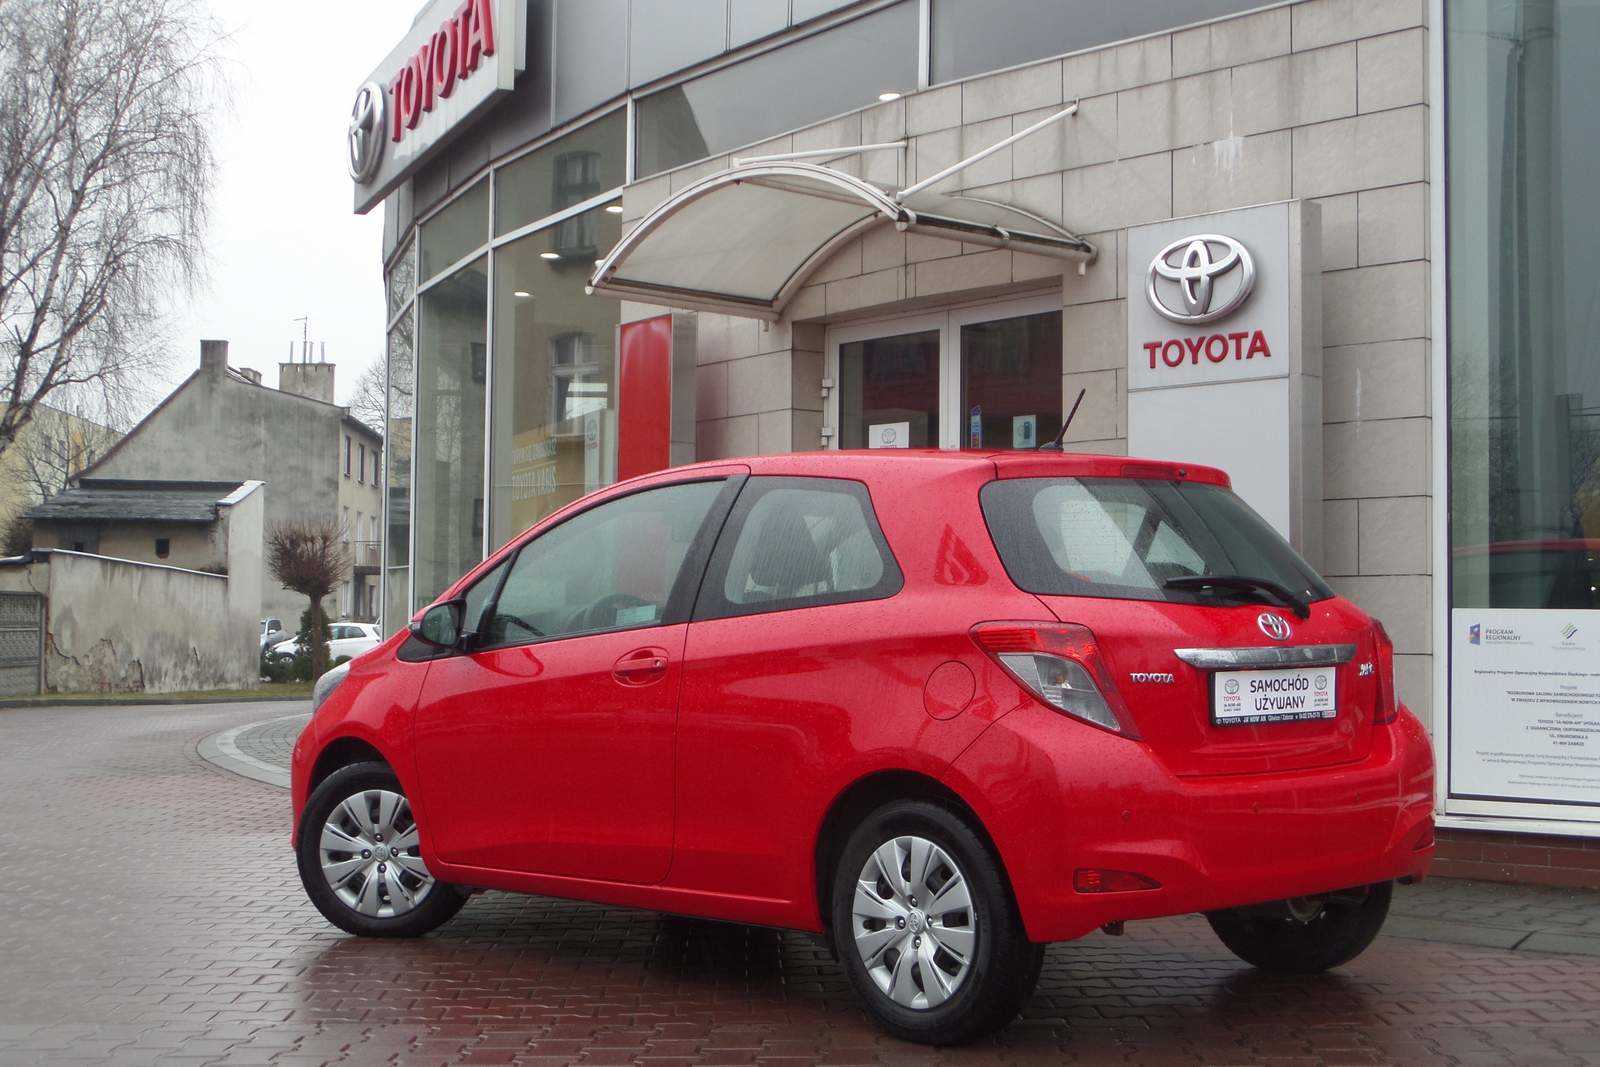 Toyota Yaris 1.0 Klima Gwarancja Benzyna, 2013 r